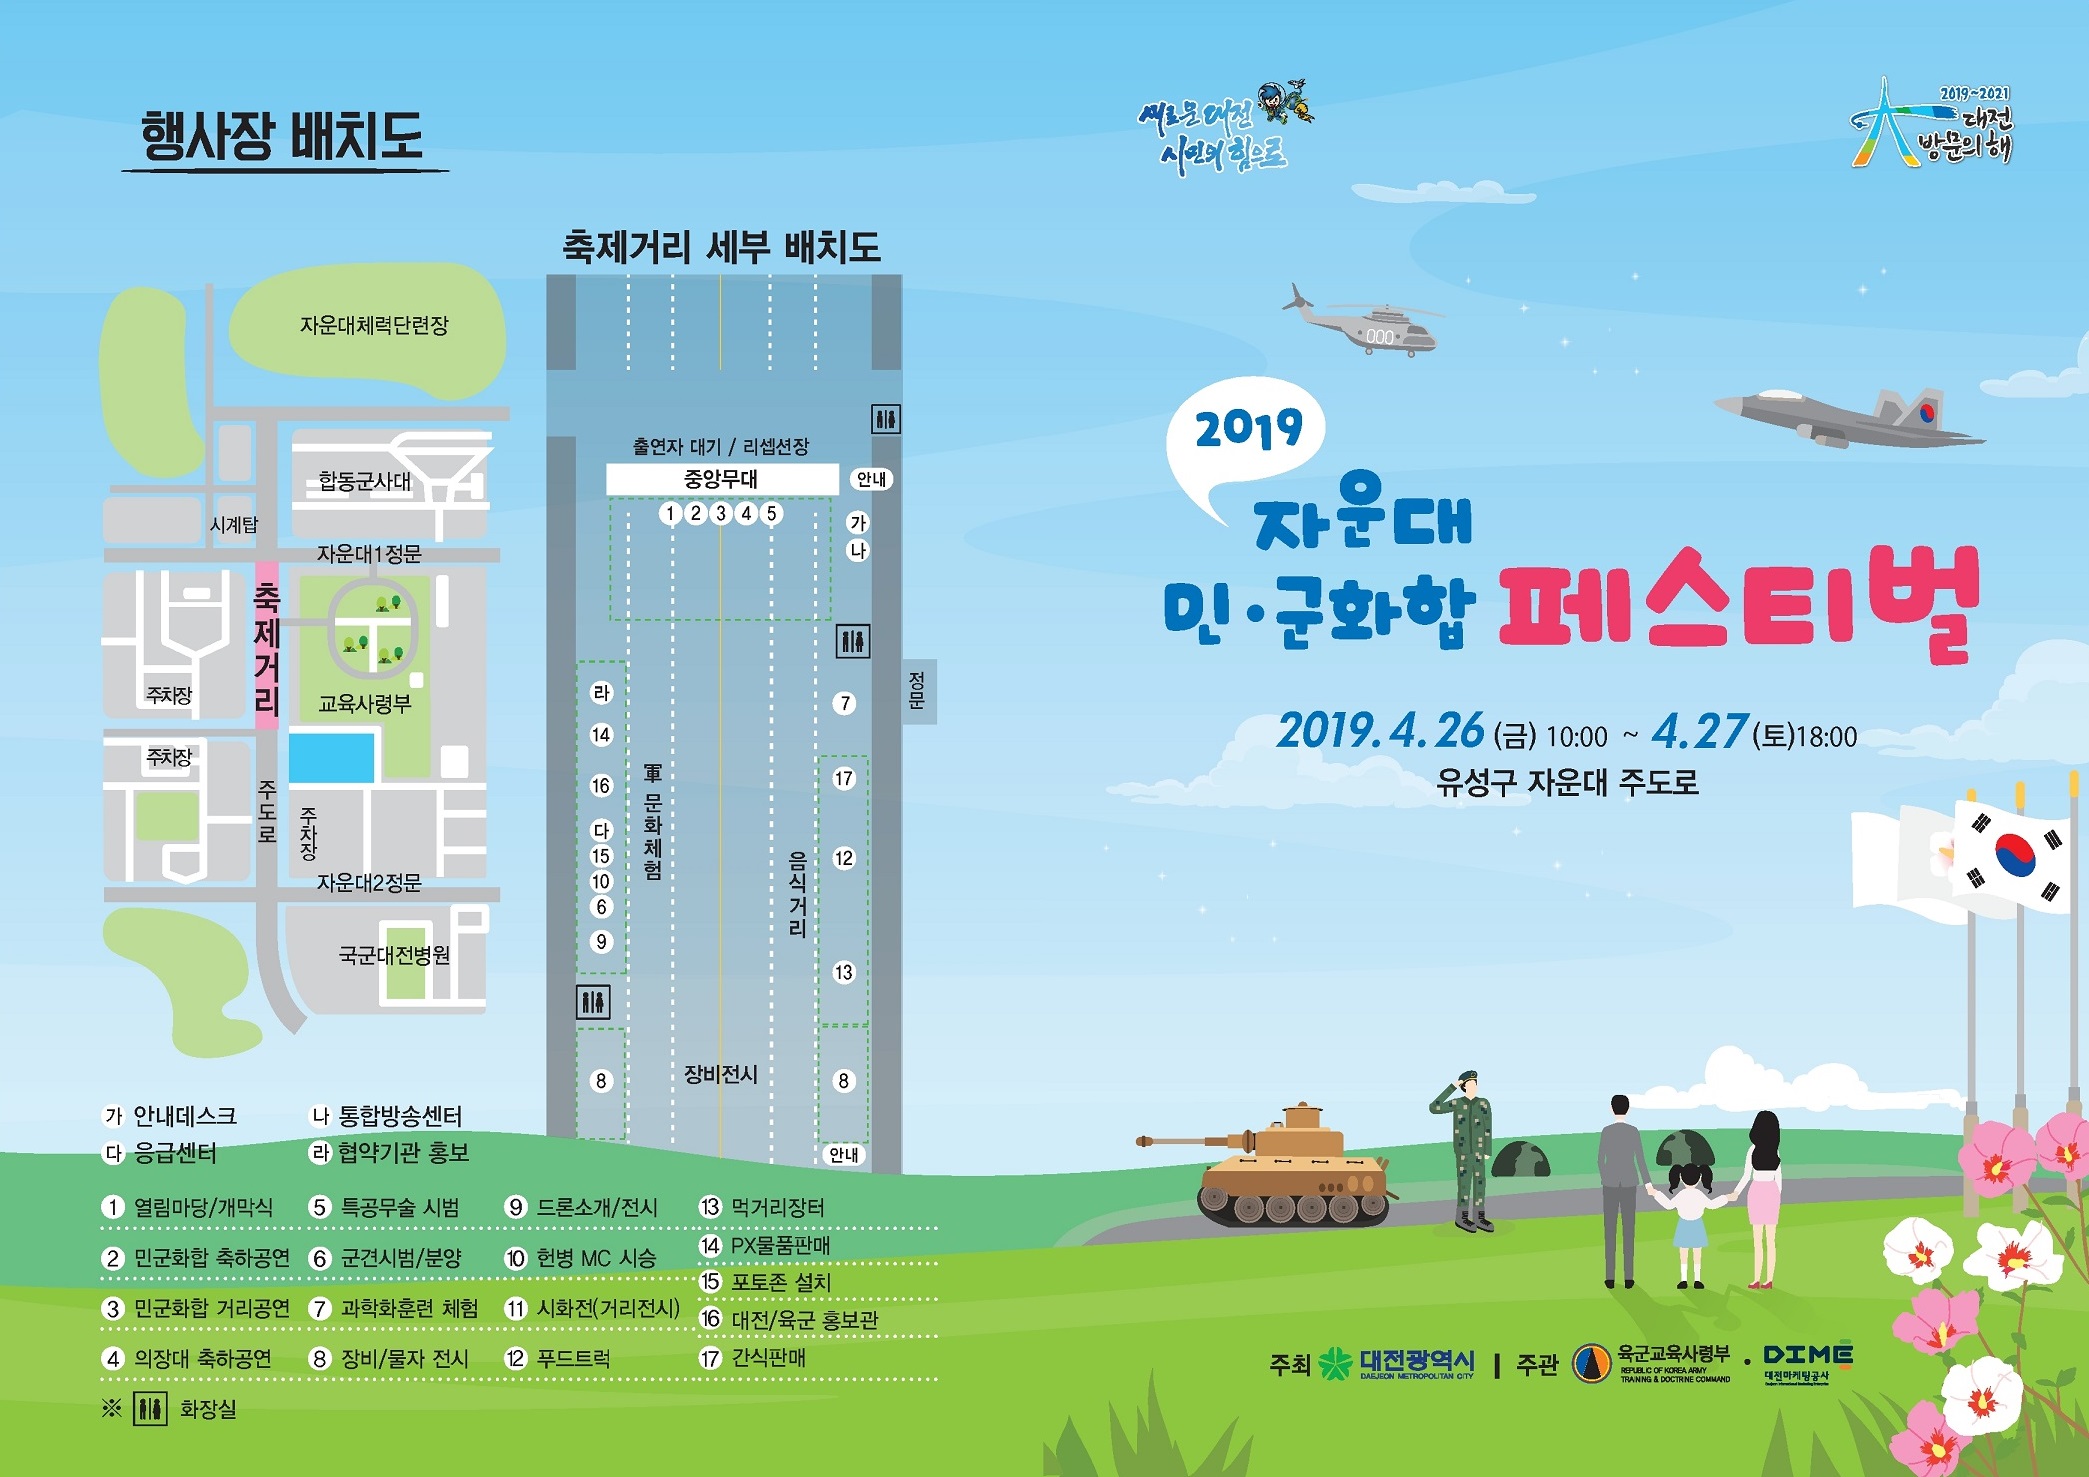 대전에서 민·군 화합 페스티벌이 개최된다. <사진 = 대전시 제공>